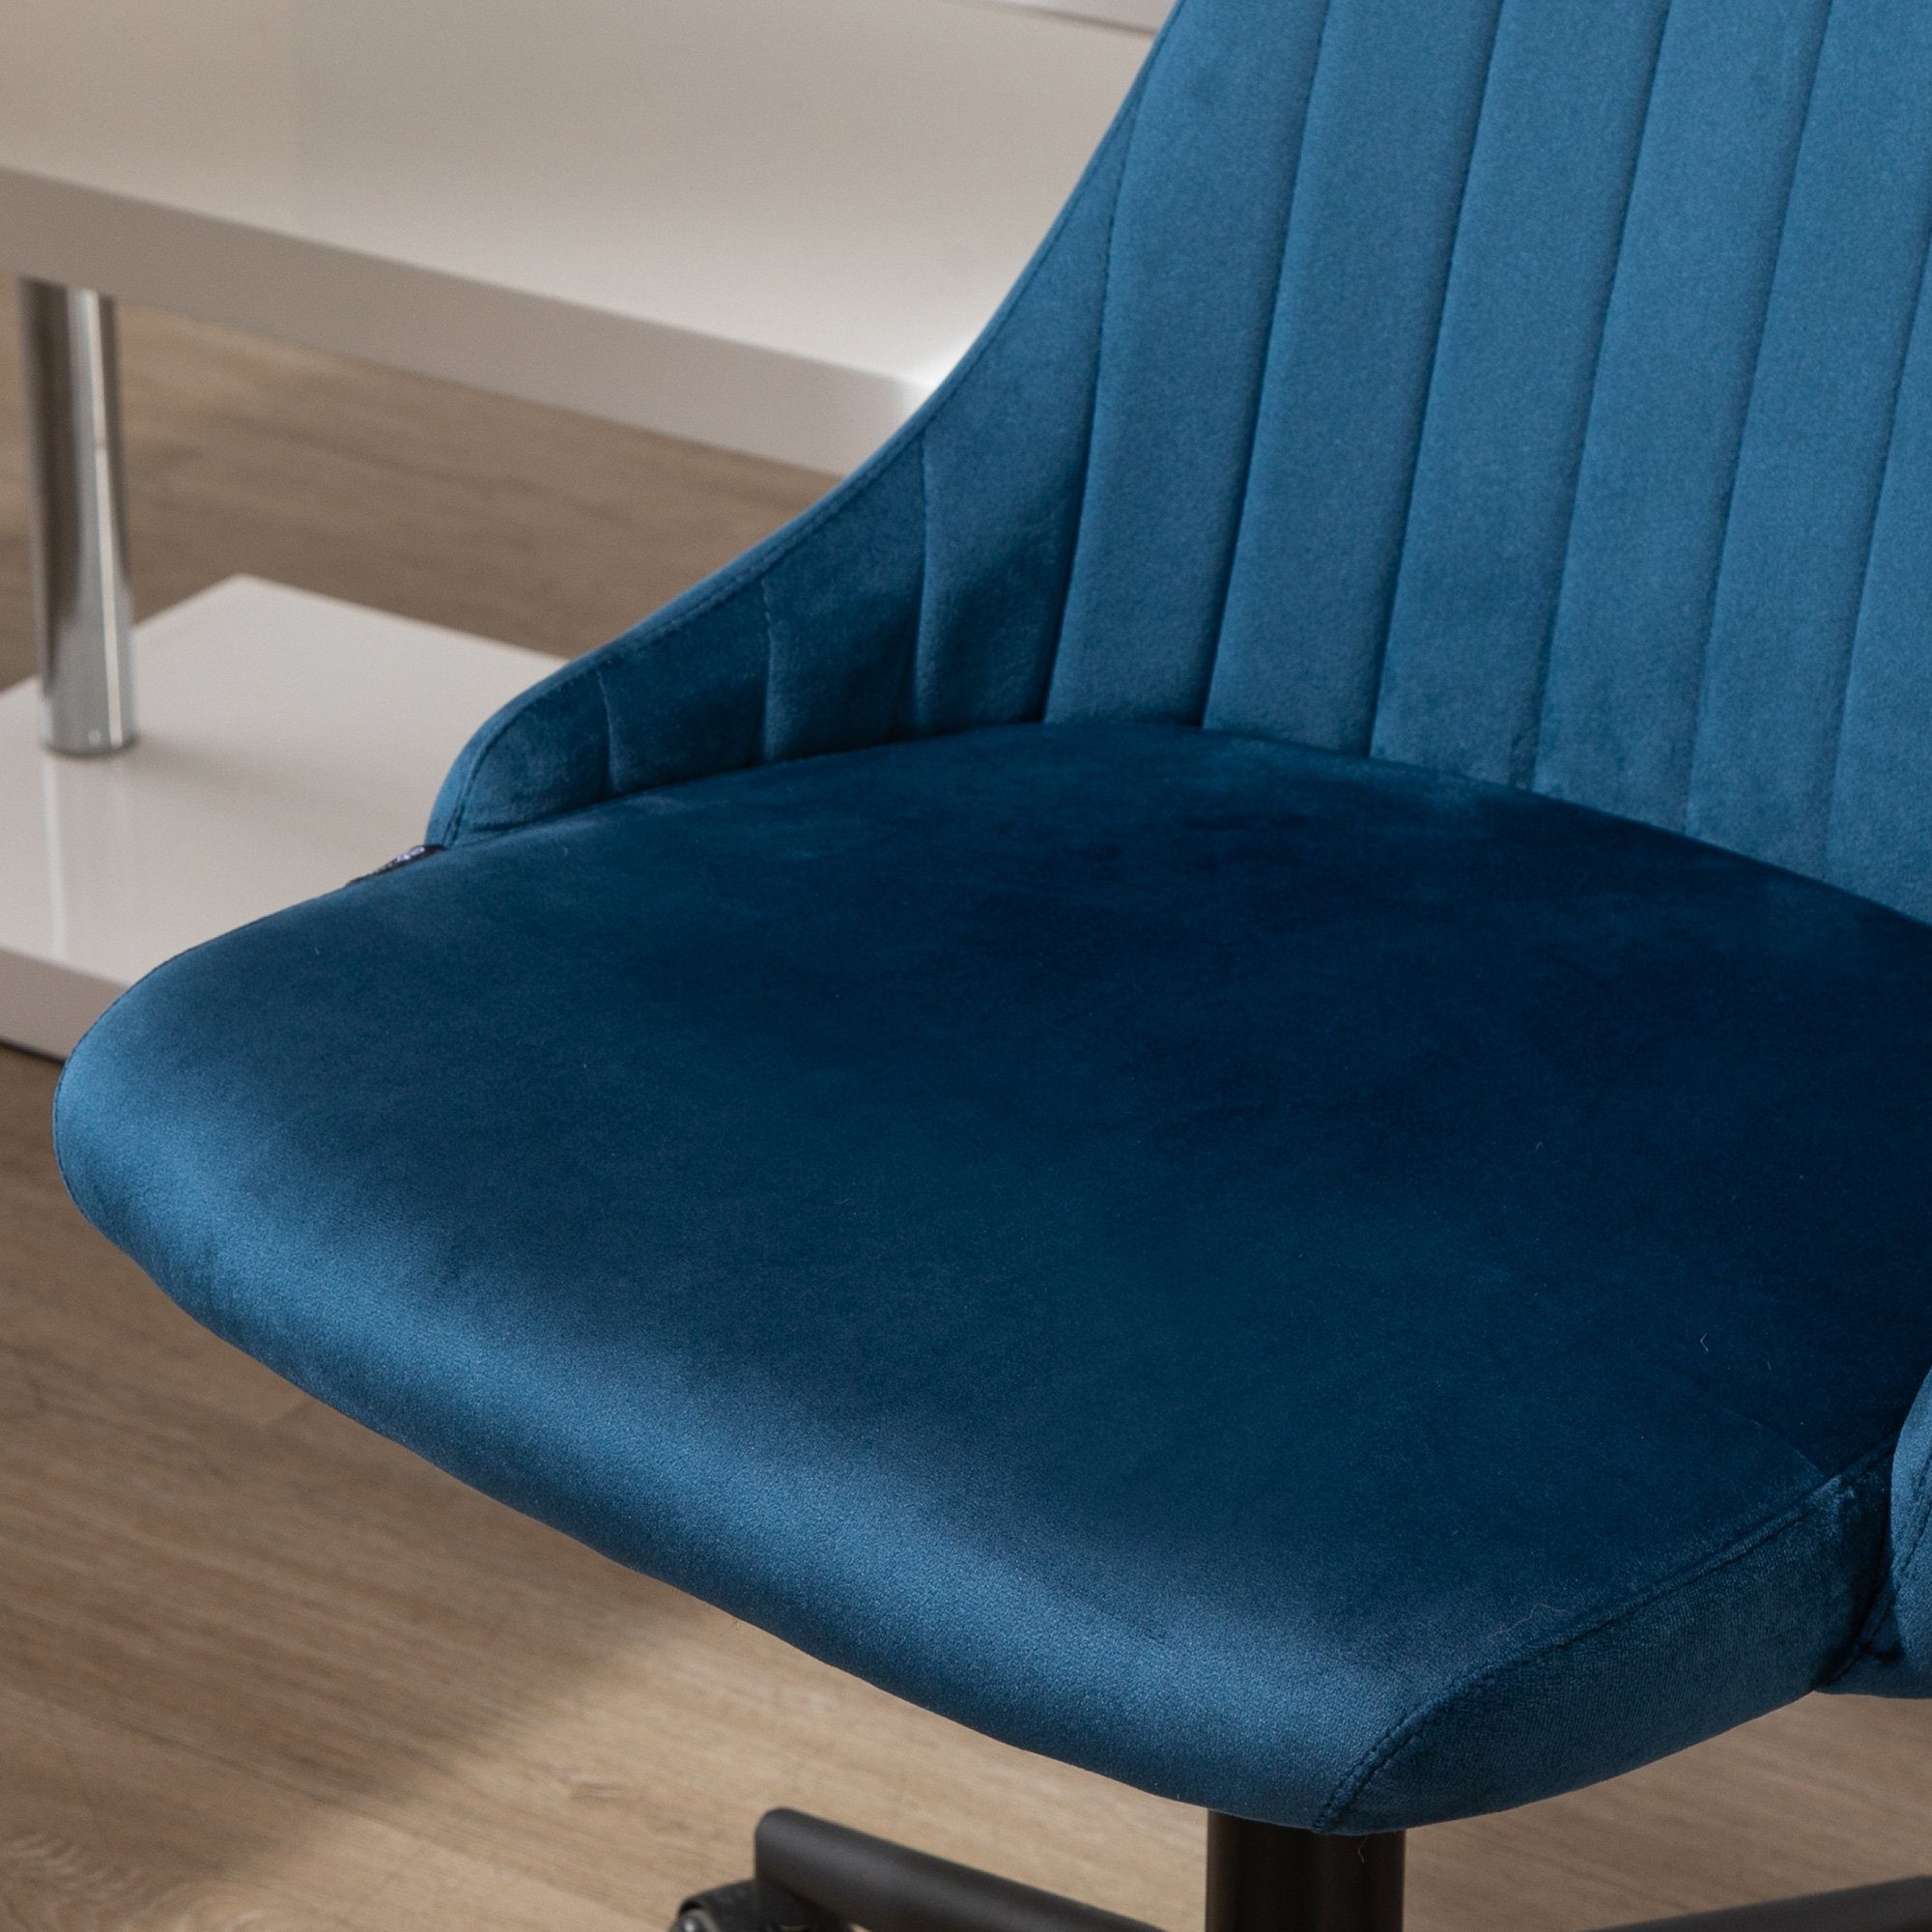 Liniendesign Bürostuhl Ergonomisches Vinsetto (Bürostuhl Samtartiges Bürostuhl 1 Polyester Blau St), Drehstuhl Rückenlehne, mit